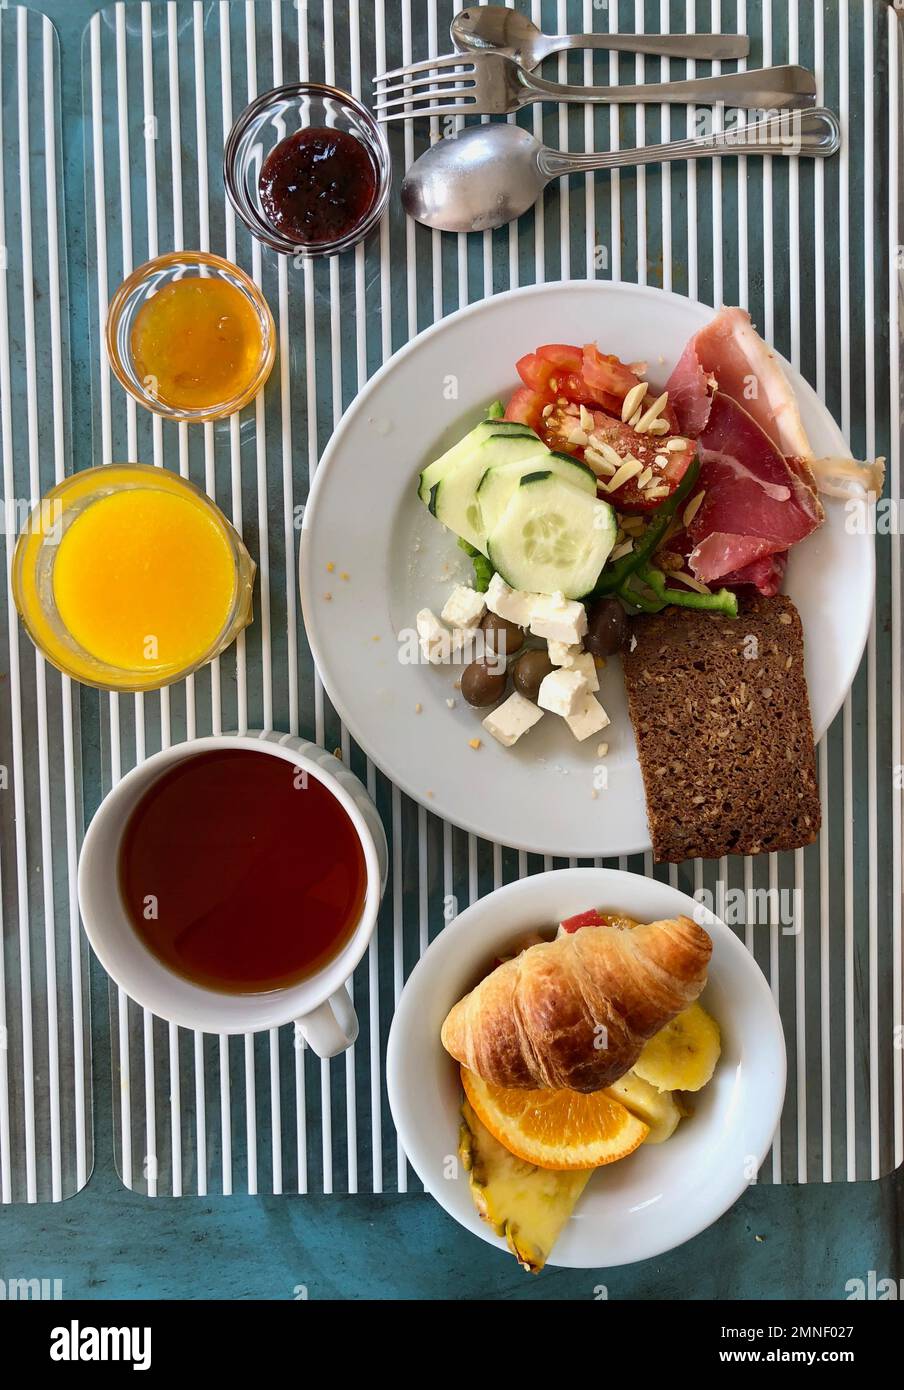 Set mesa con desayuno para una persona, con pan, jamón, verduras, queso, Jam y muesli, Portugal Foto de stock